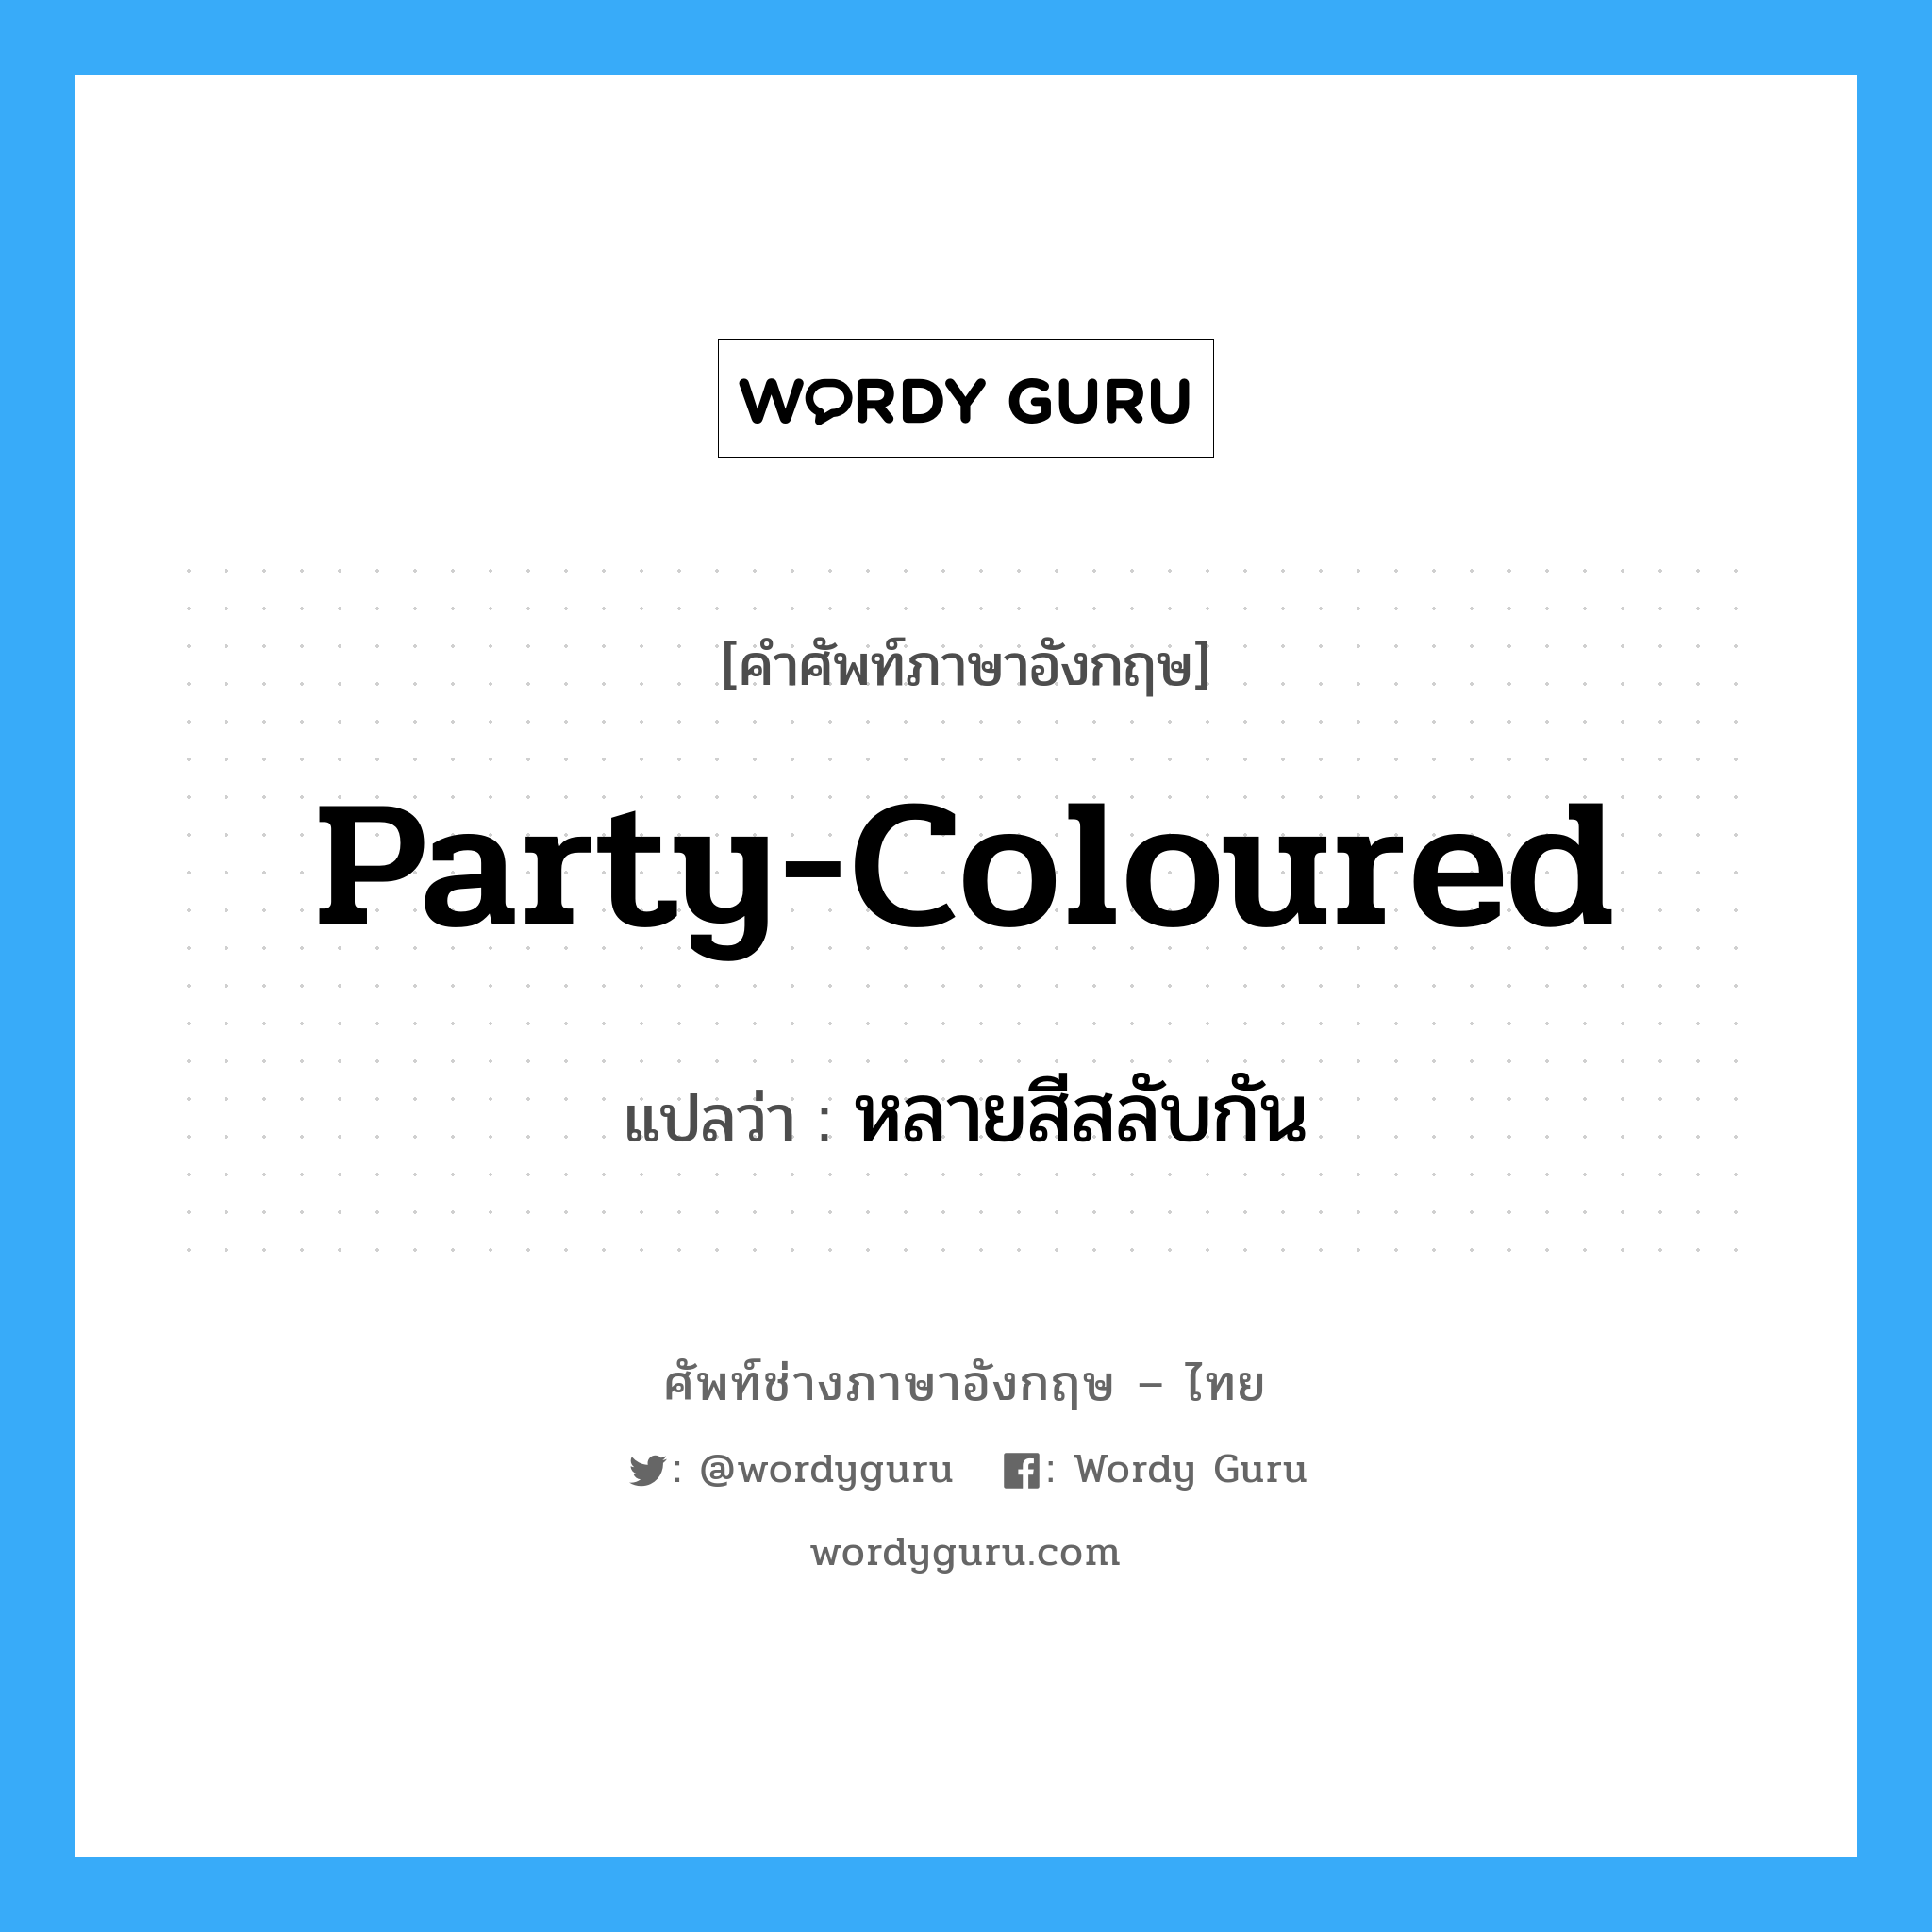 party-coloured แปลว่า?, คำศัพท์ช่างภาษาอังกฤษ - ไทย party-coloured คำศัพท์ภาษาอังกฤษ party-coloured แปลว่า หลายสีสลับกัน